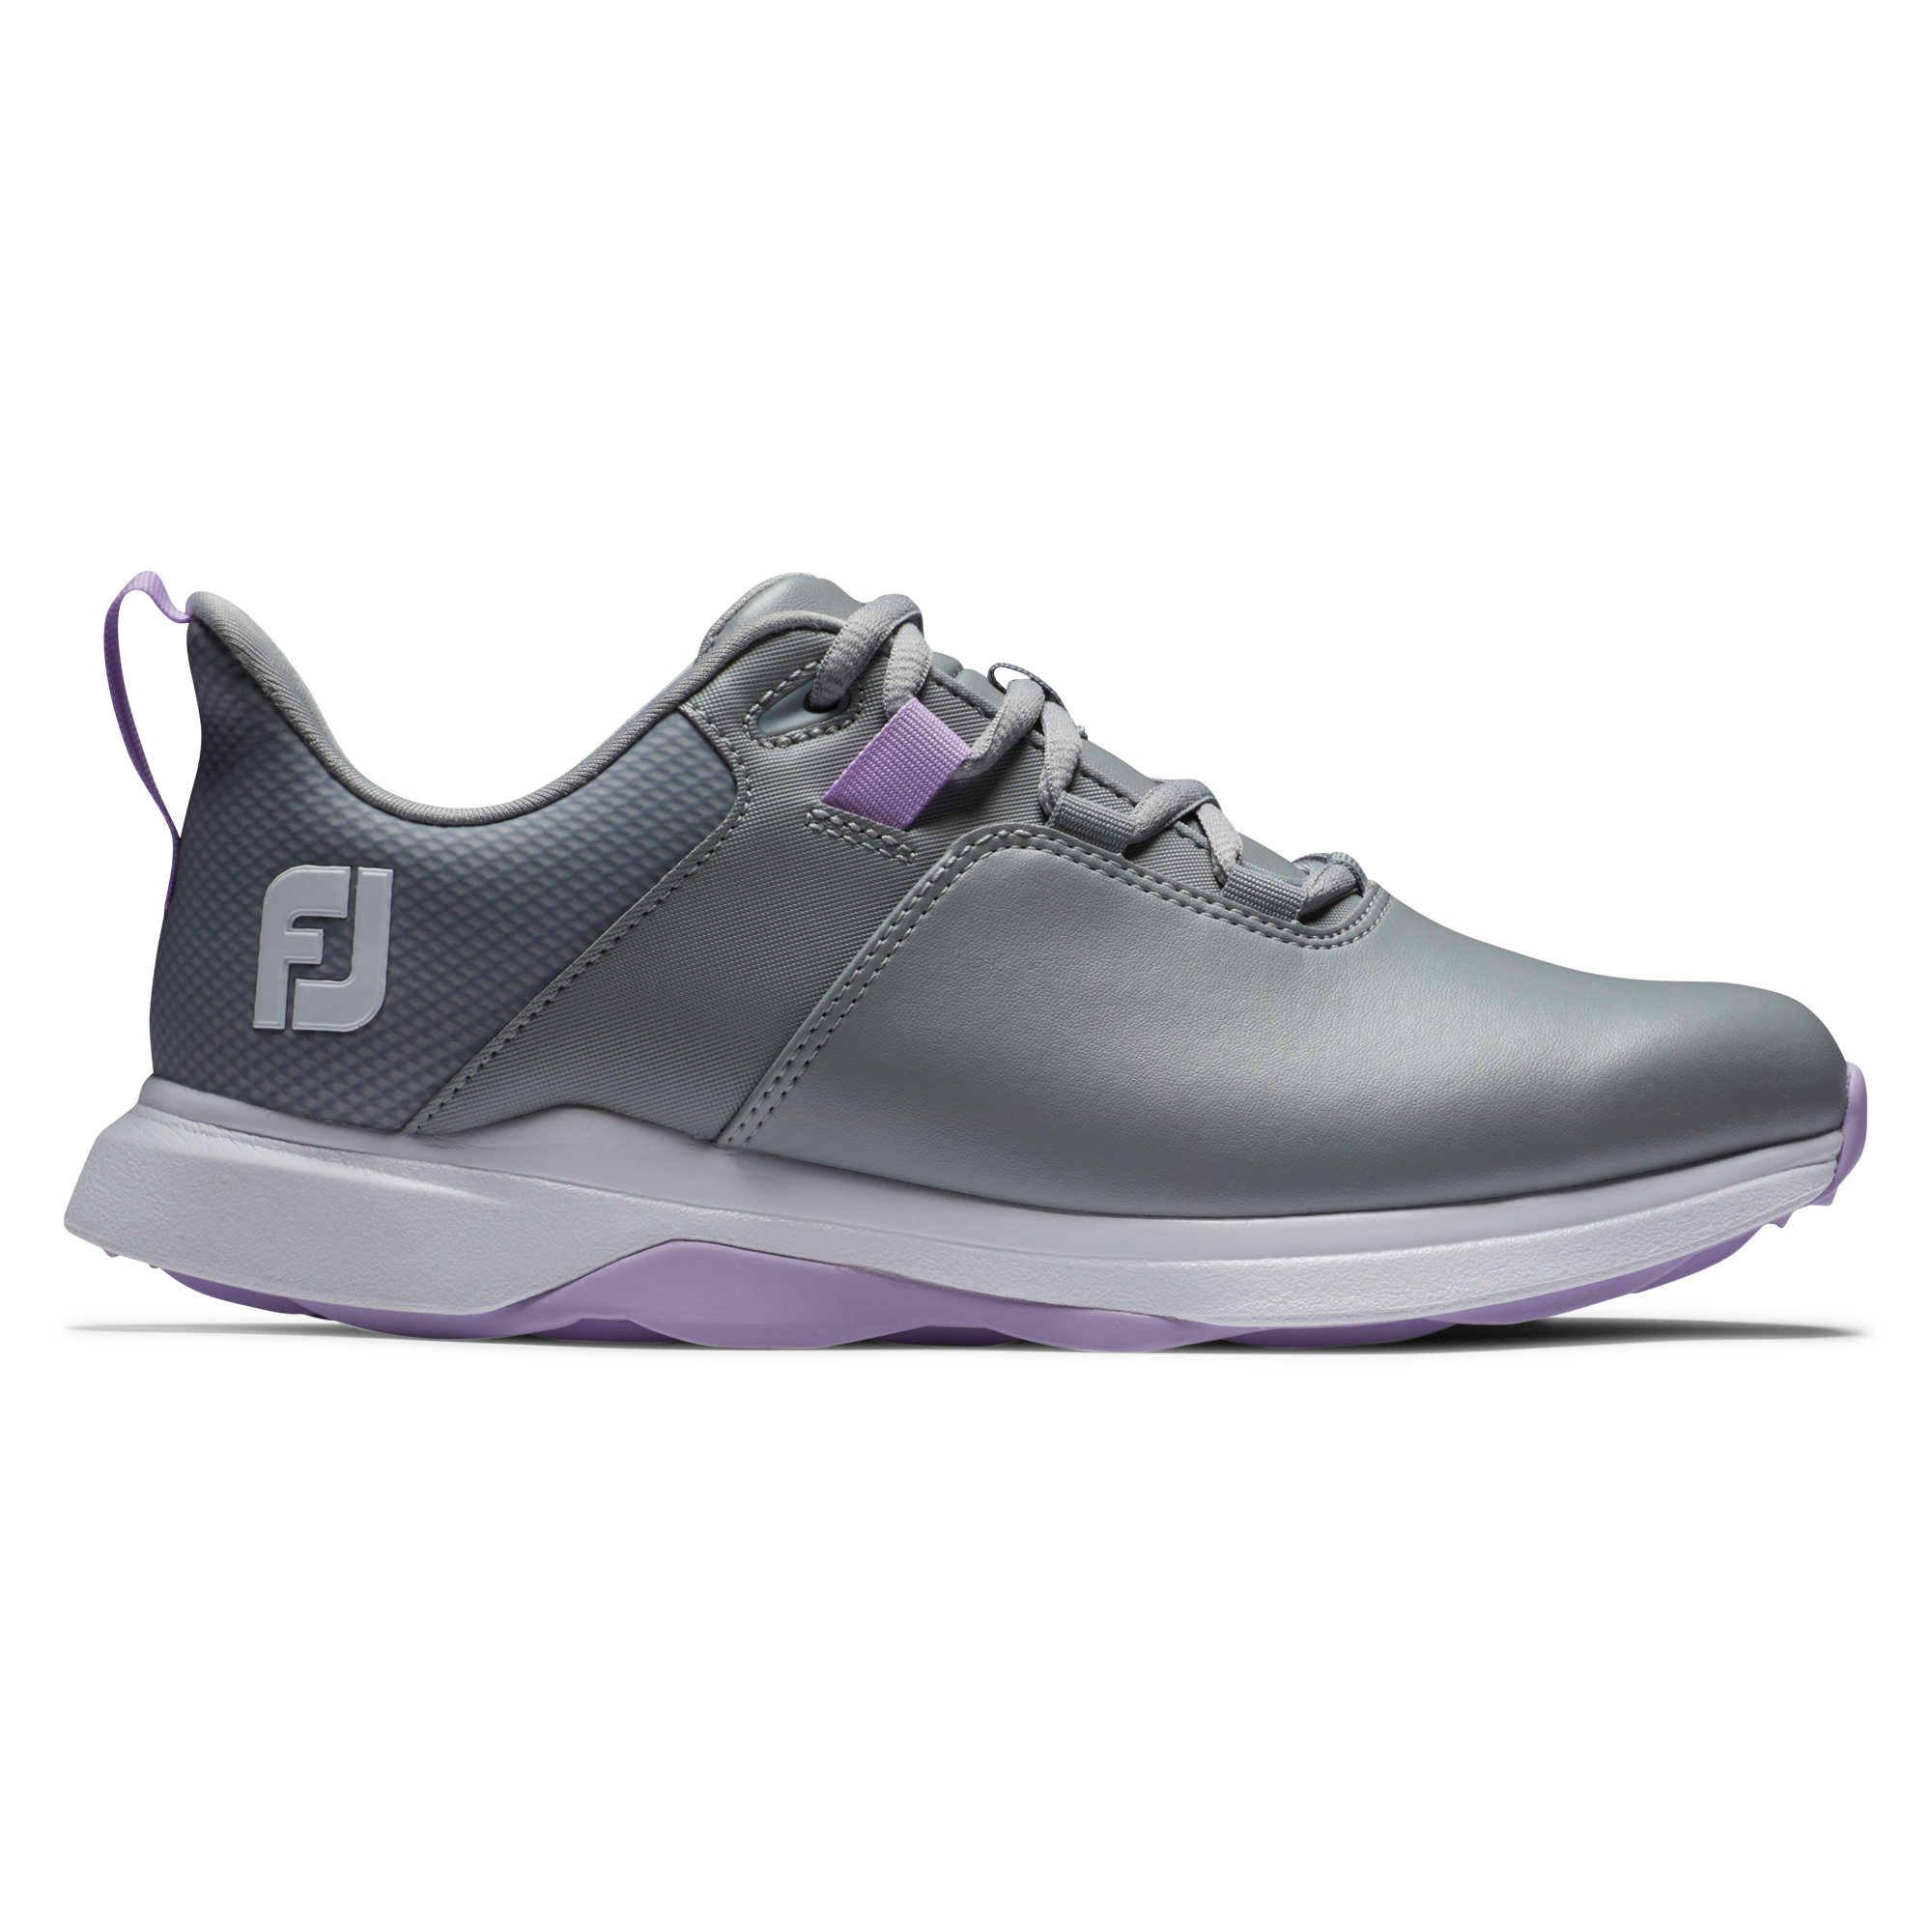 FootJoy ProLite dámské golfové boty, šedé, vel. 6,5 UK